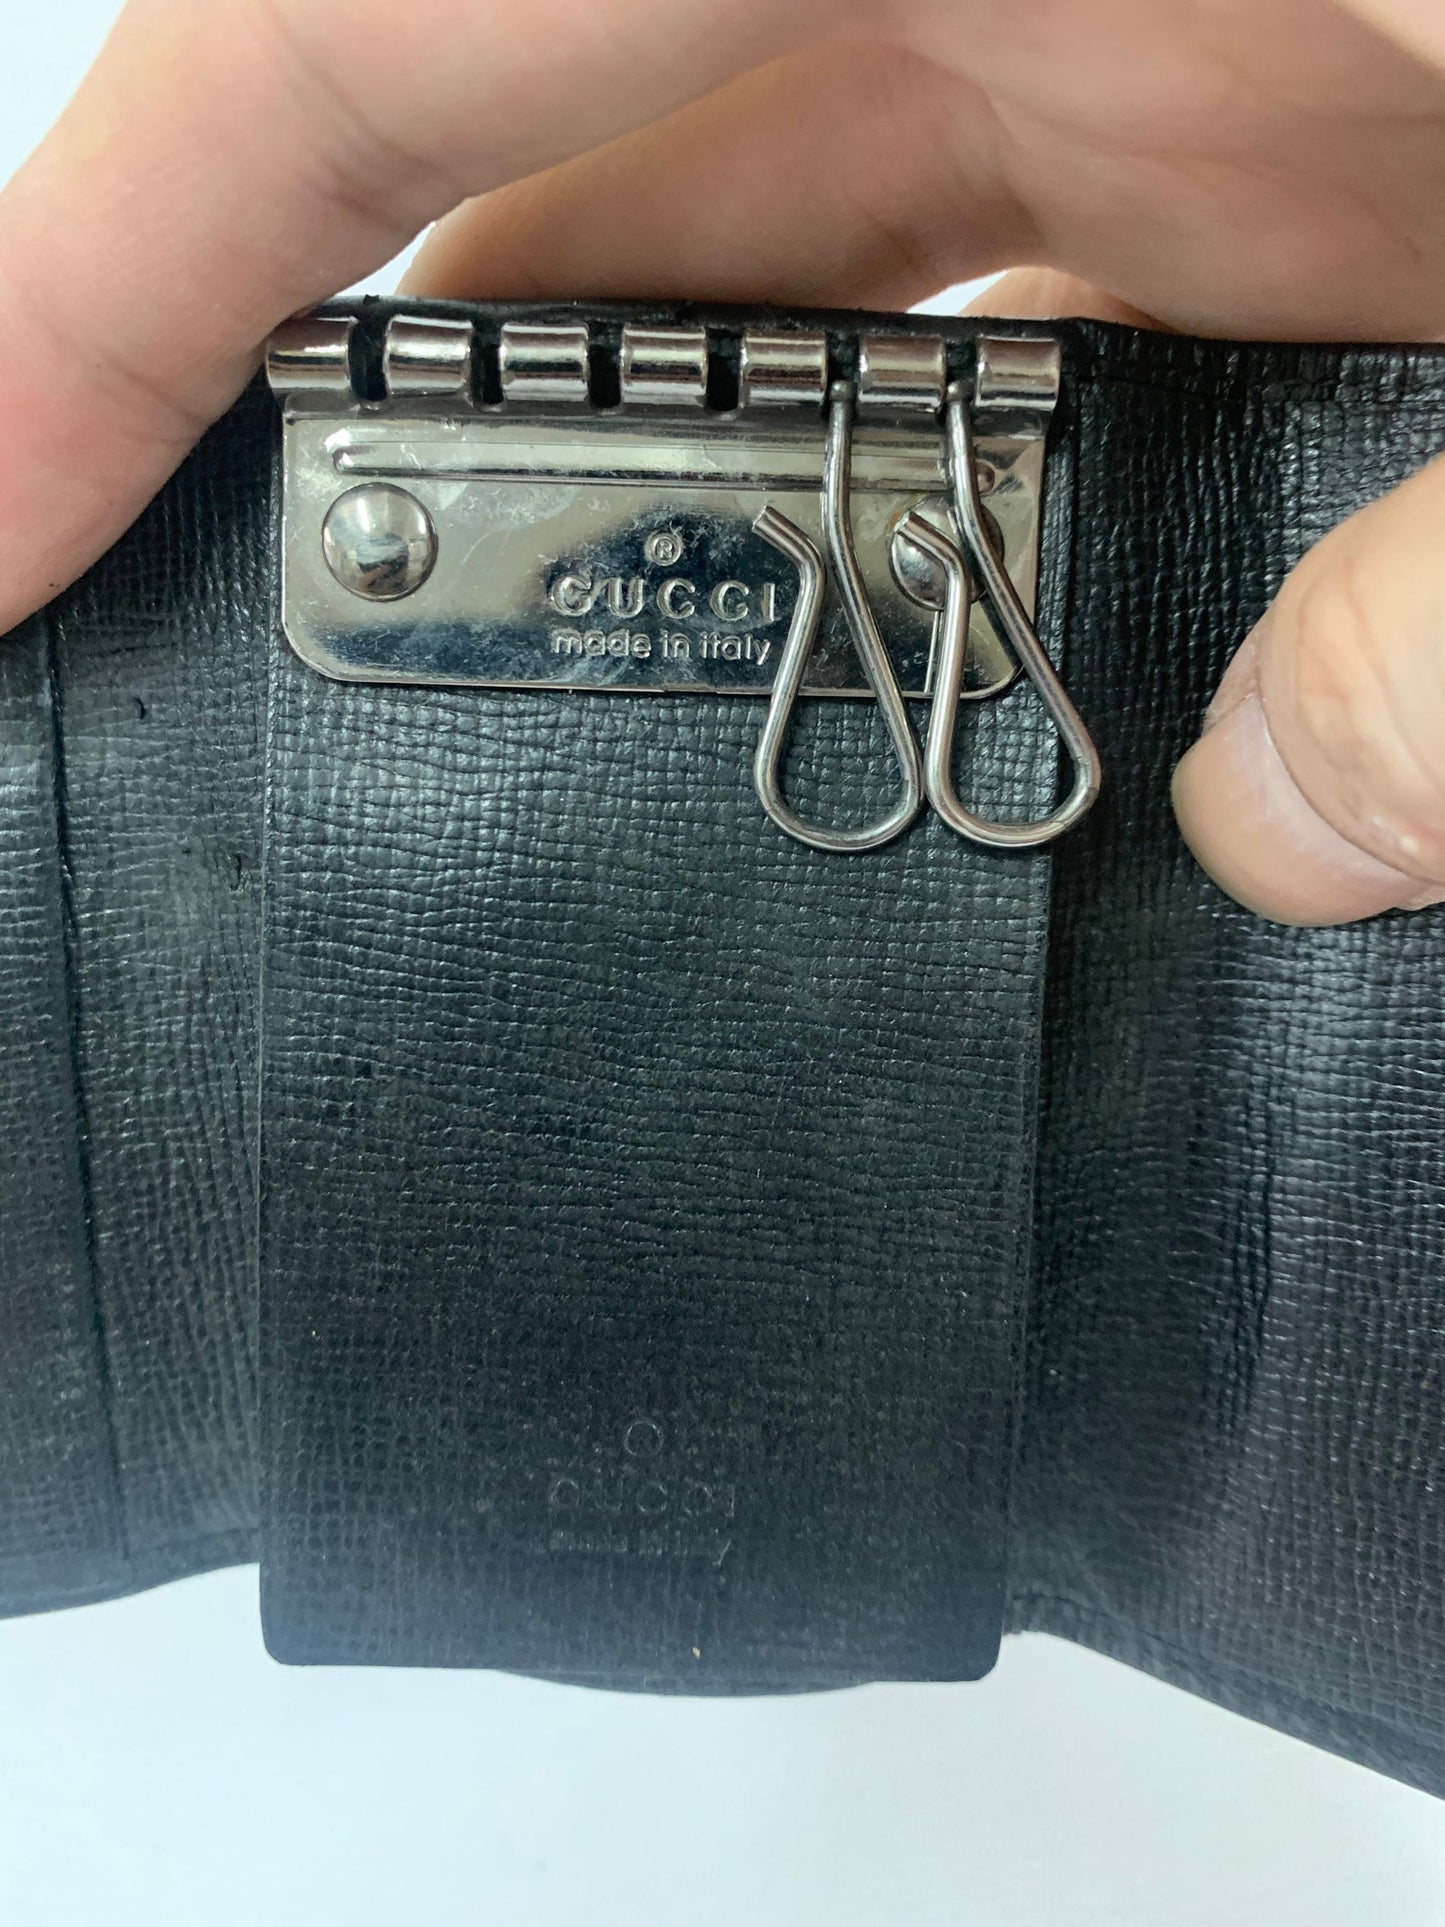 Gucci black key bag 9w x 6.5H cm (BBW 55)